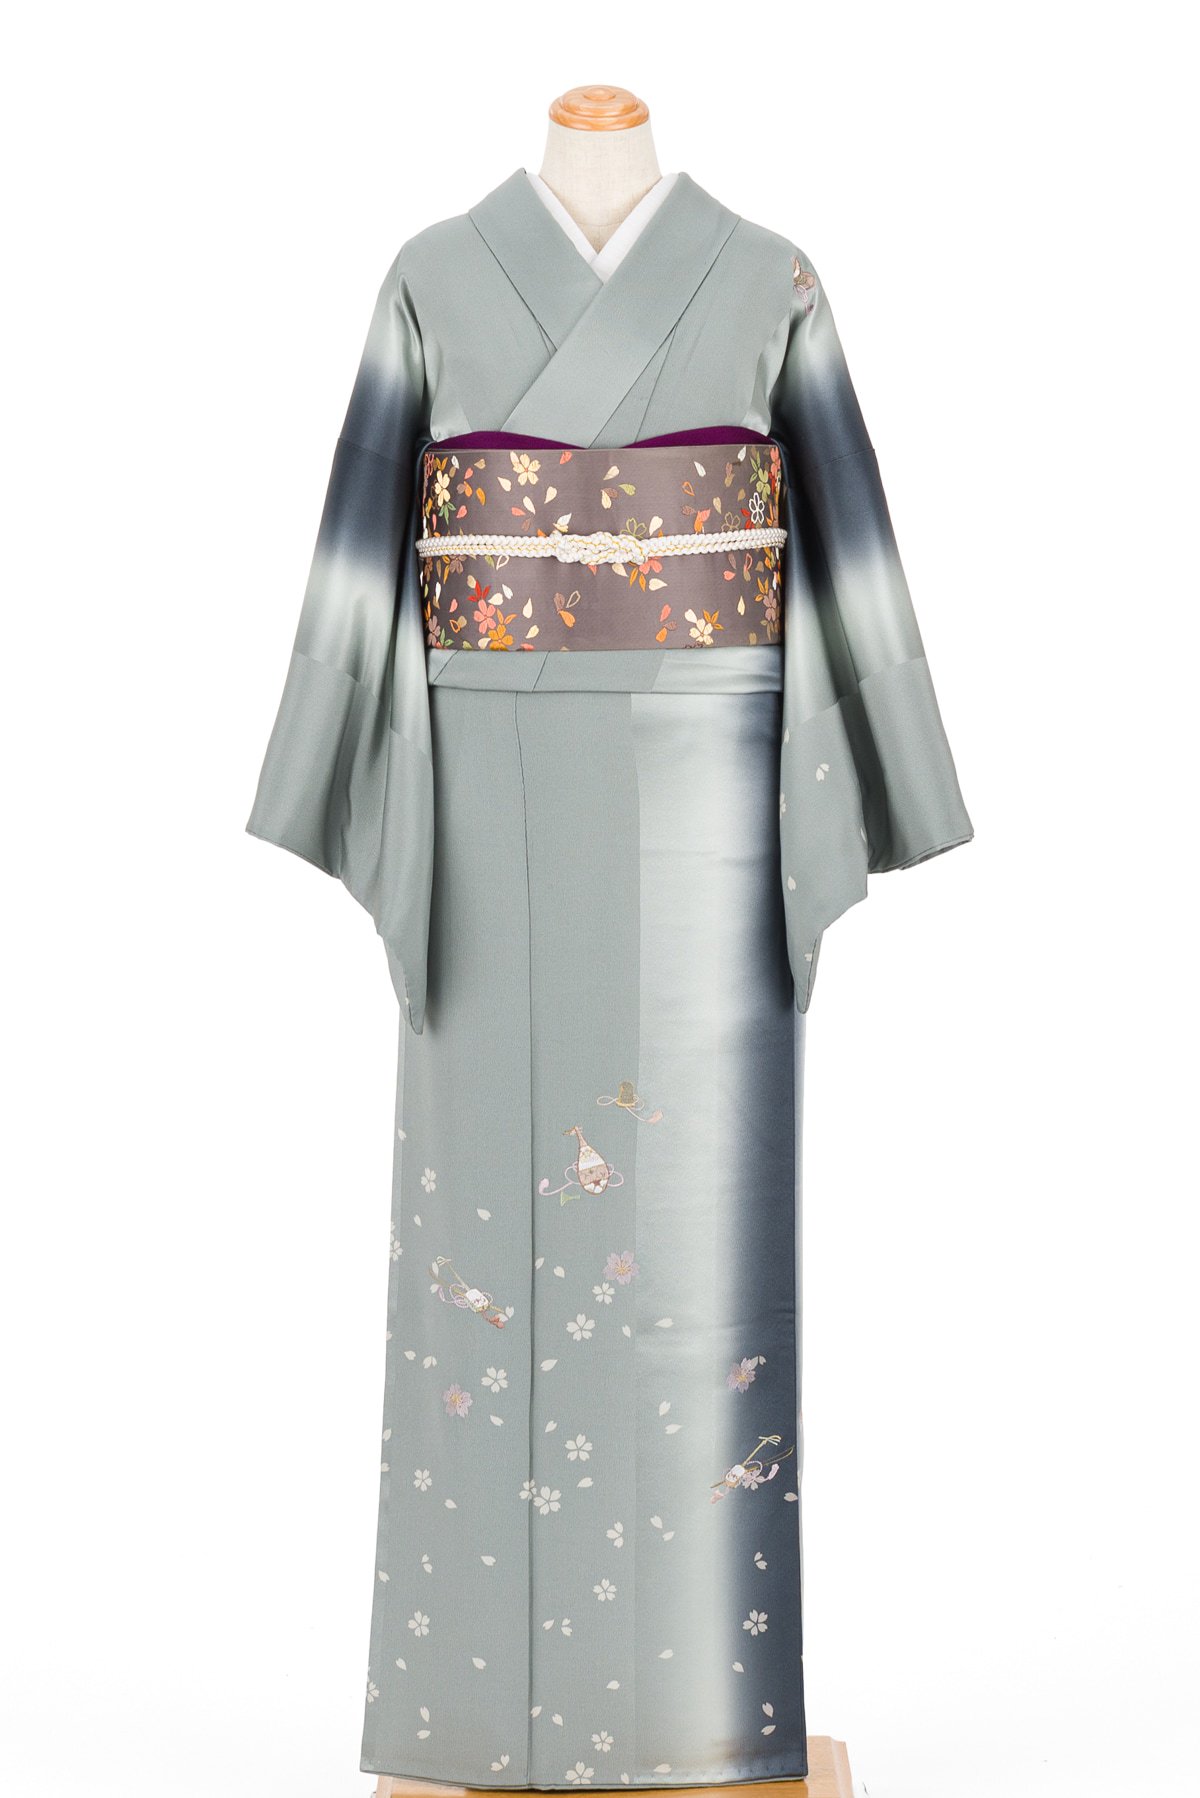 付下げ着物\u0026袋帯 2点セット 刺繍 桜 kimono A-1359kimonolove